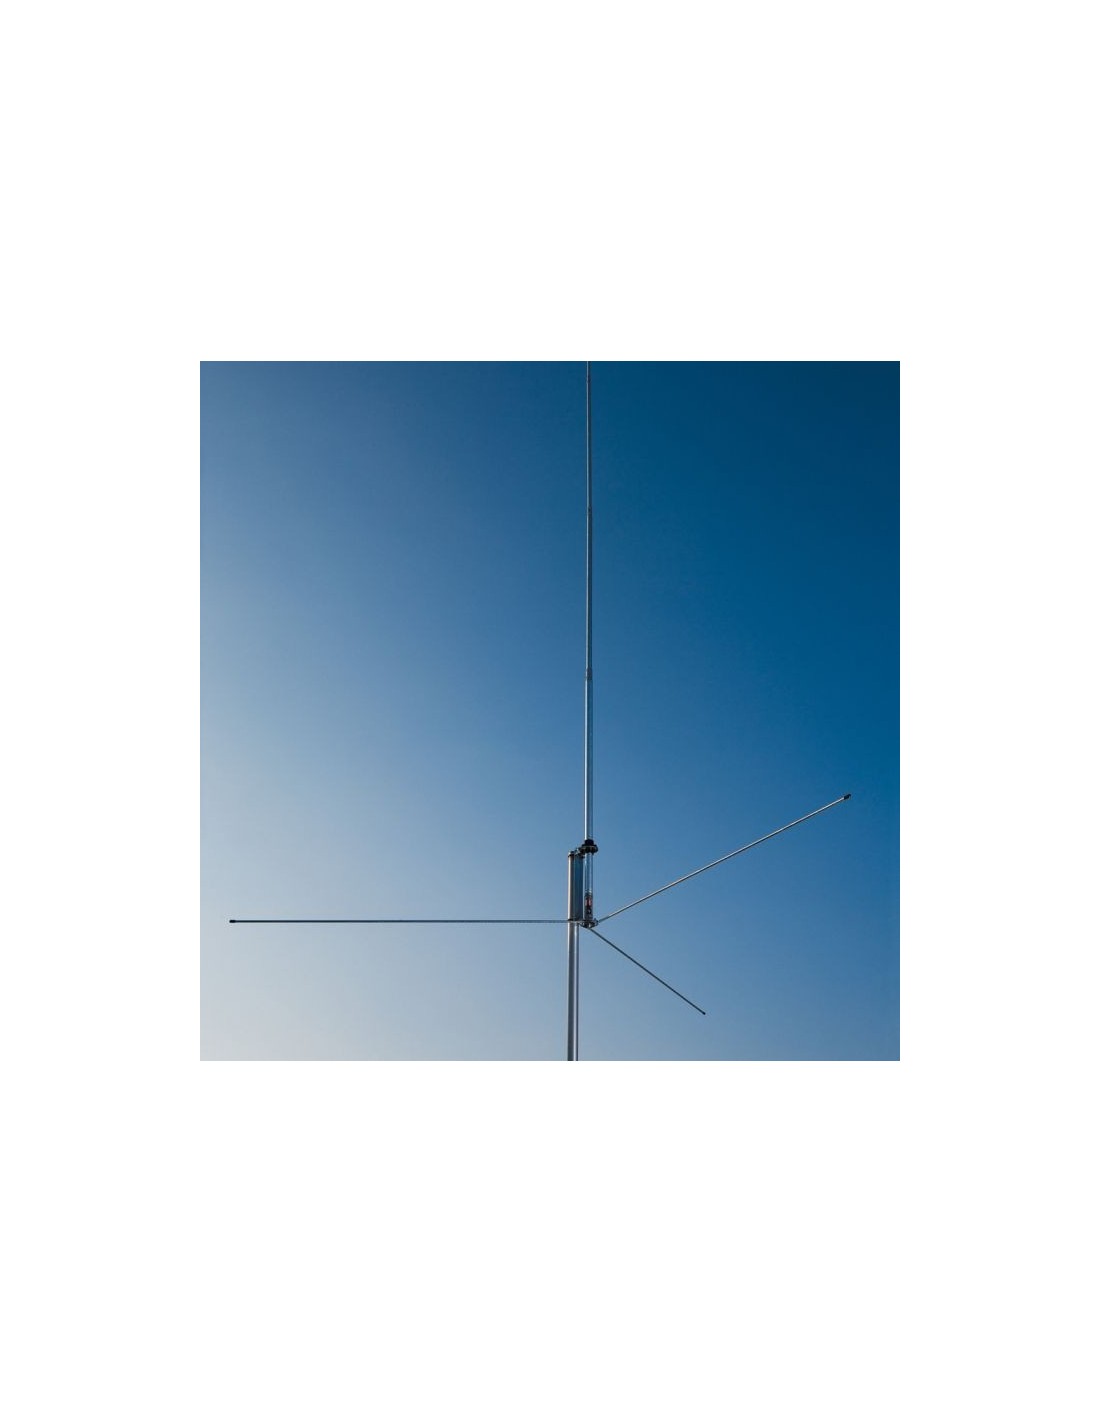 Home Base CB Antennas